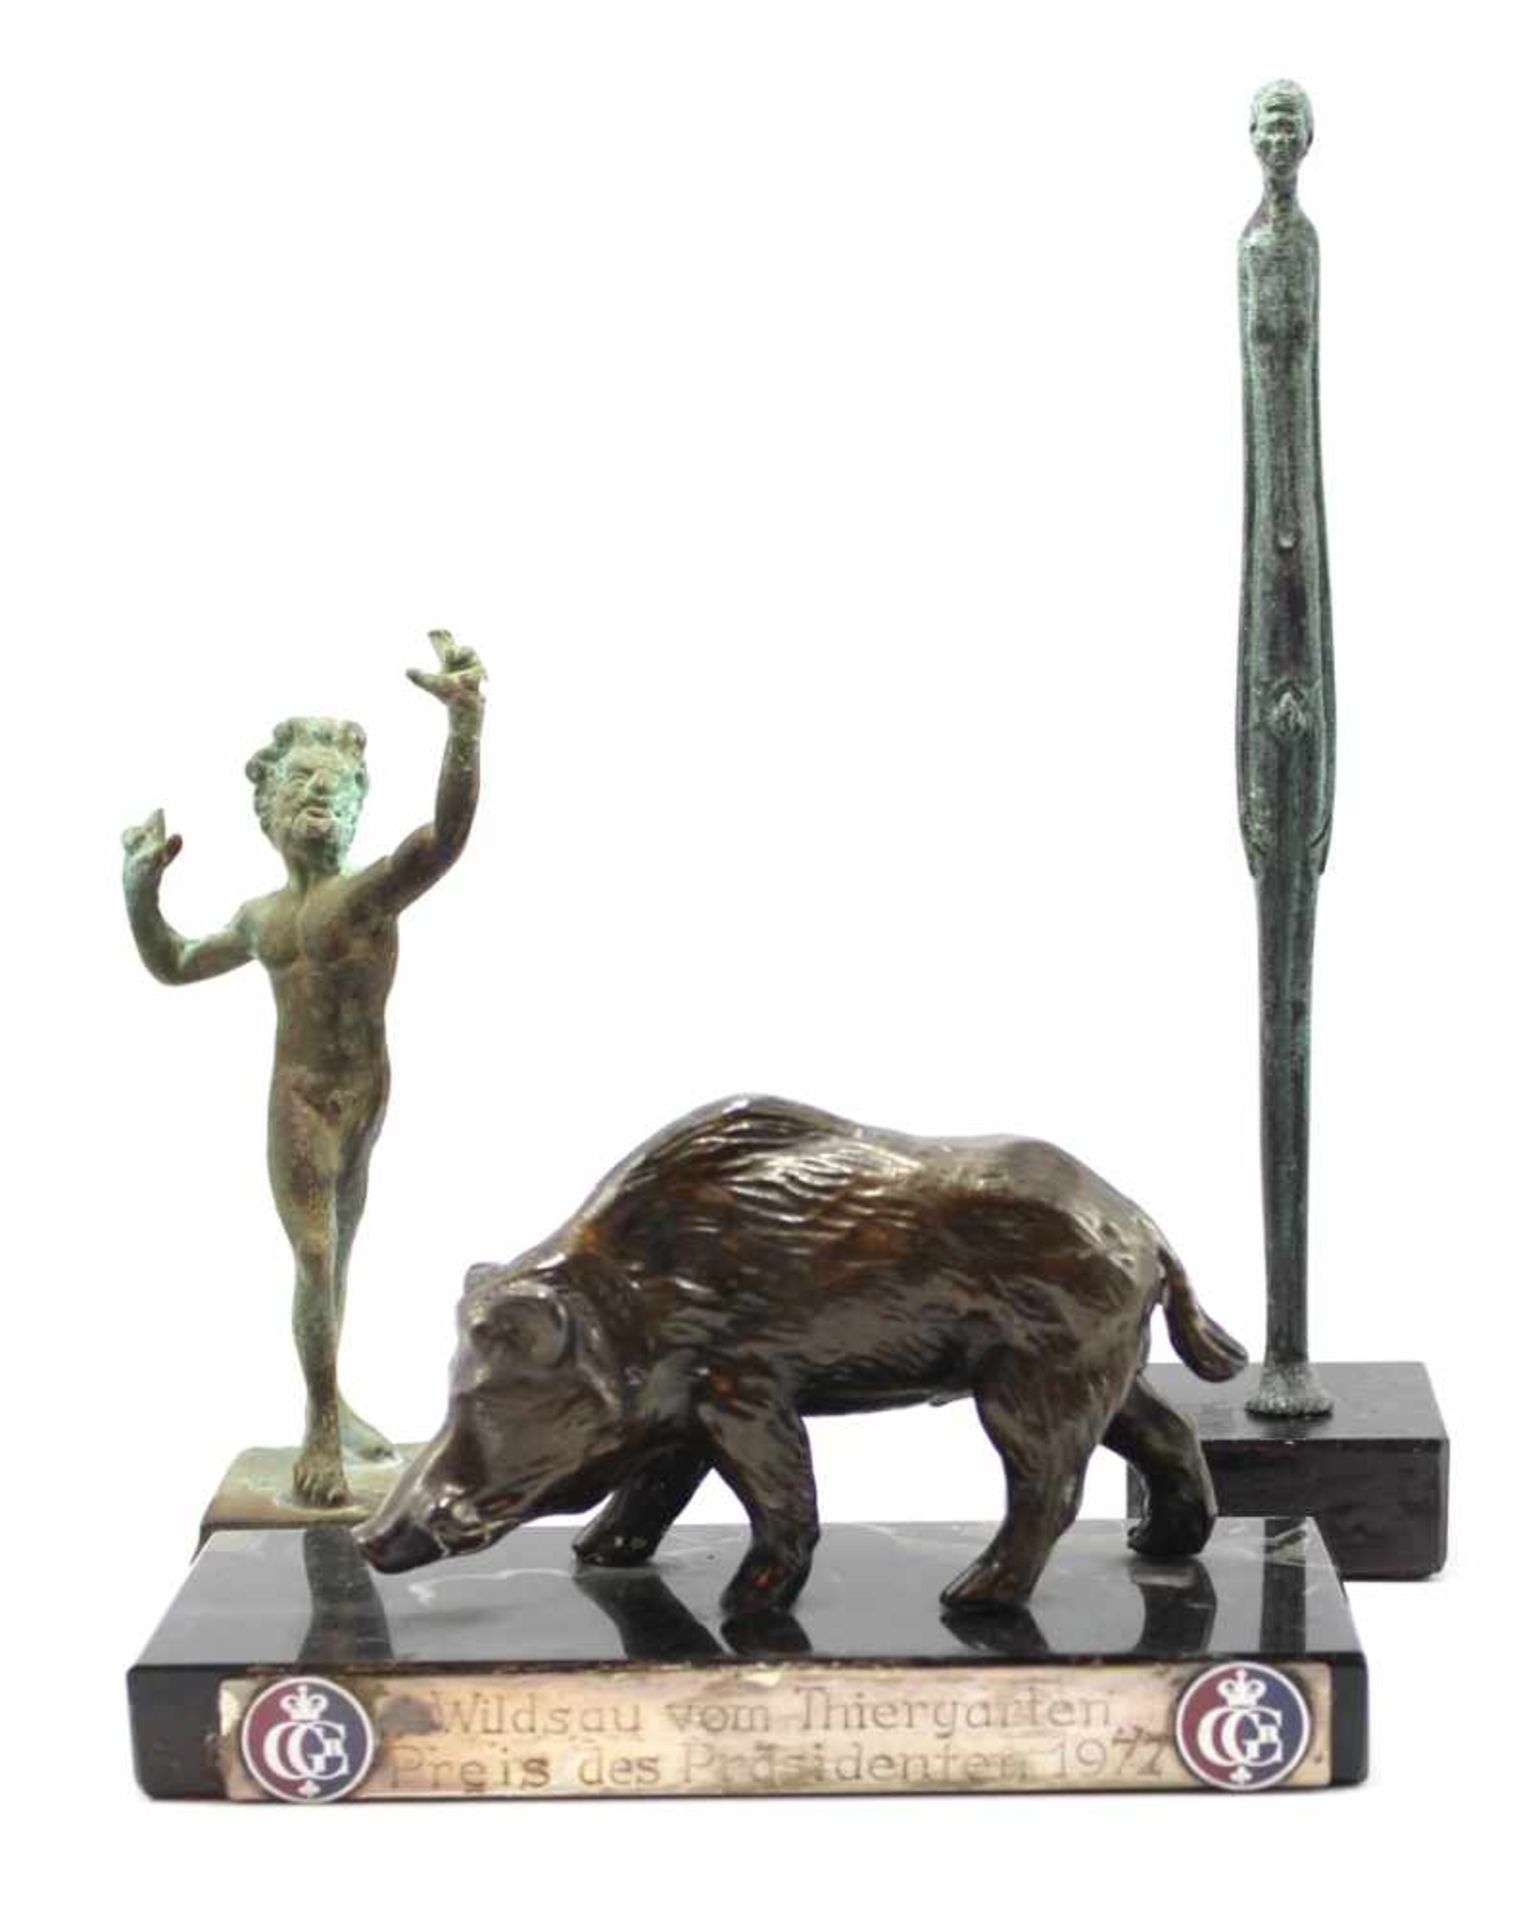 Lot Figuren - 20.Jahrhundert 1. Wildsau vom Tiergarten, Preis des Präsidenten 1972, Bronze 2. 2